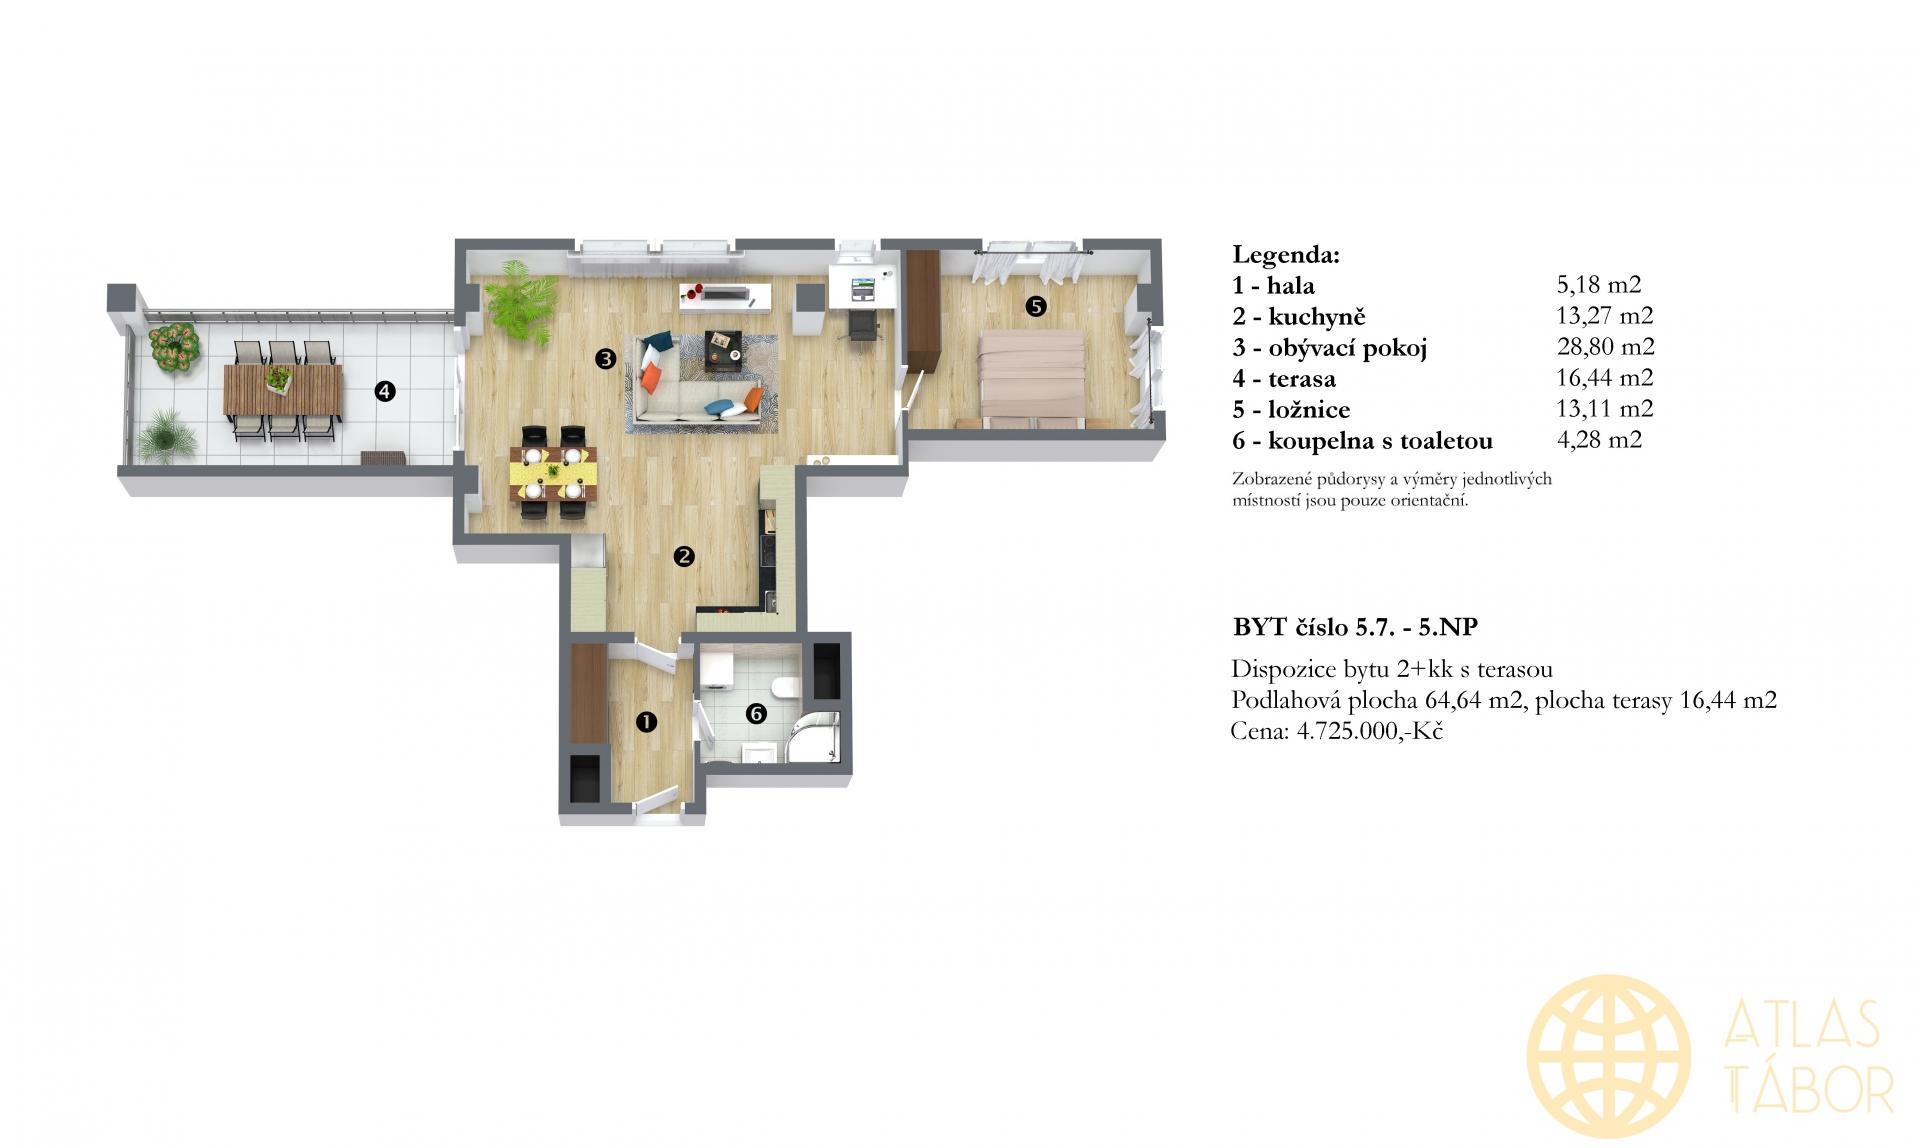 Prodej bytu č. 5.7. s terasou - 2KK - 5.NP  v projektu Dvorce II, obrázek č. 2